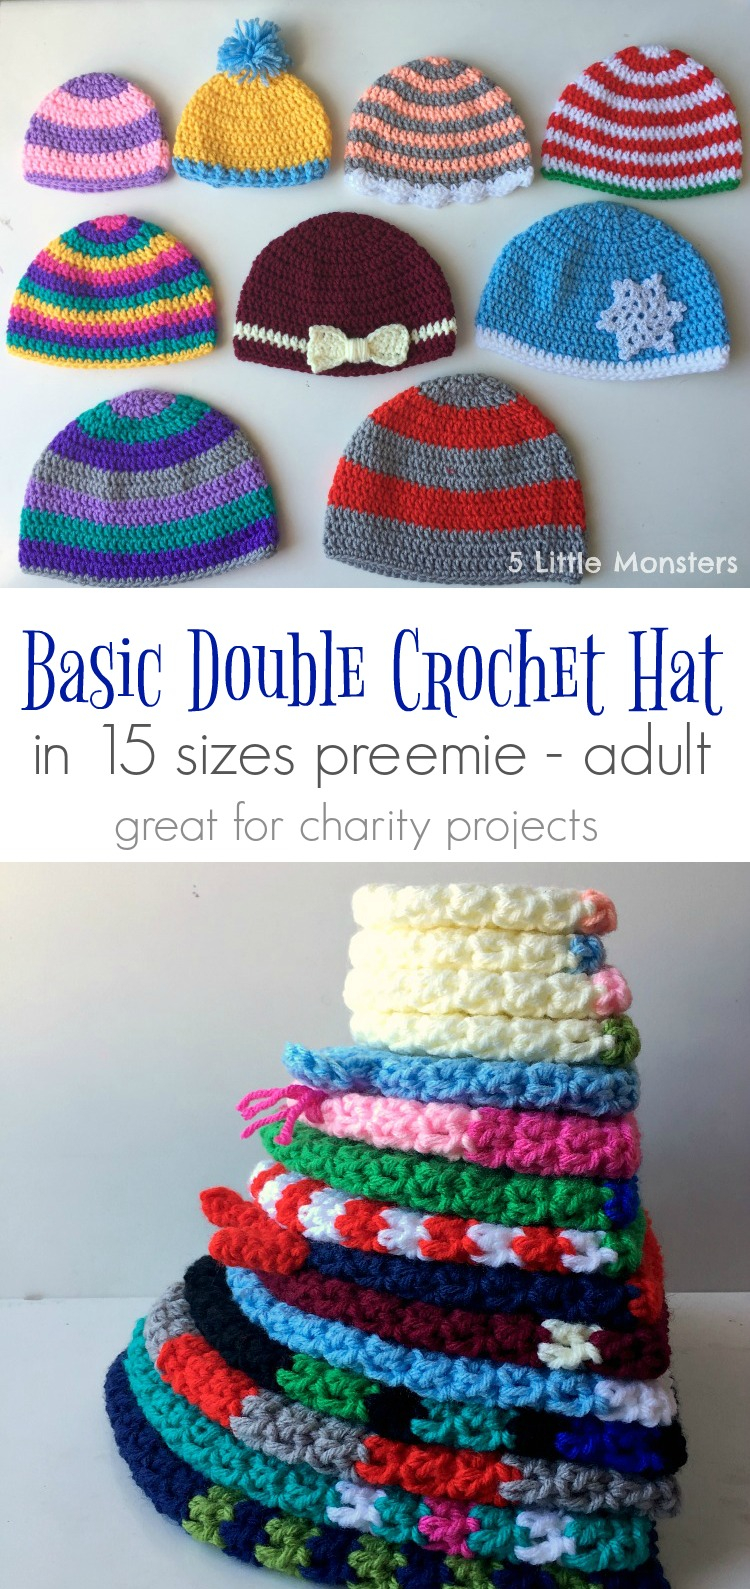 Preemie Crochet Hat Pattern 5 Little Monsters Basic Double Crochet Hats Preemie Adult